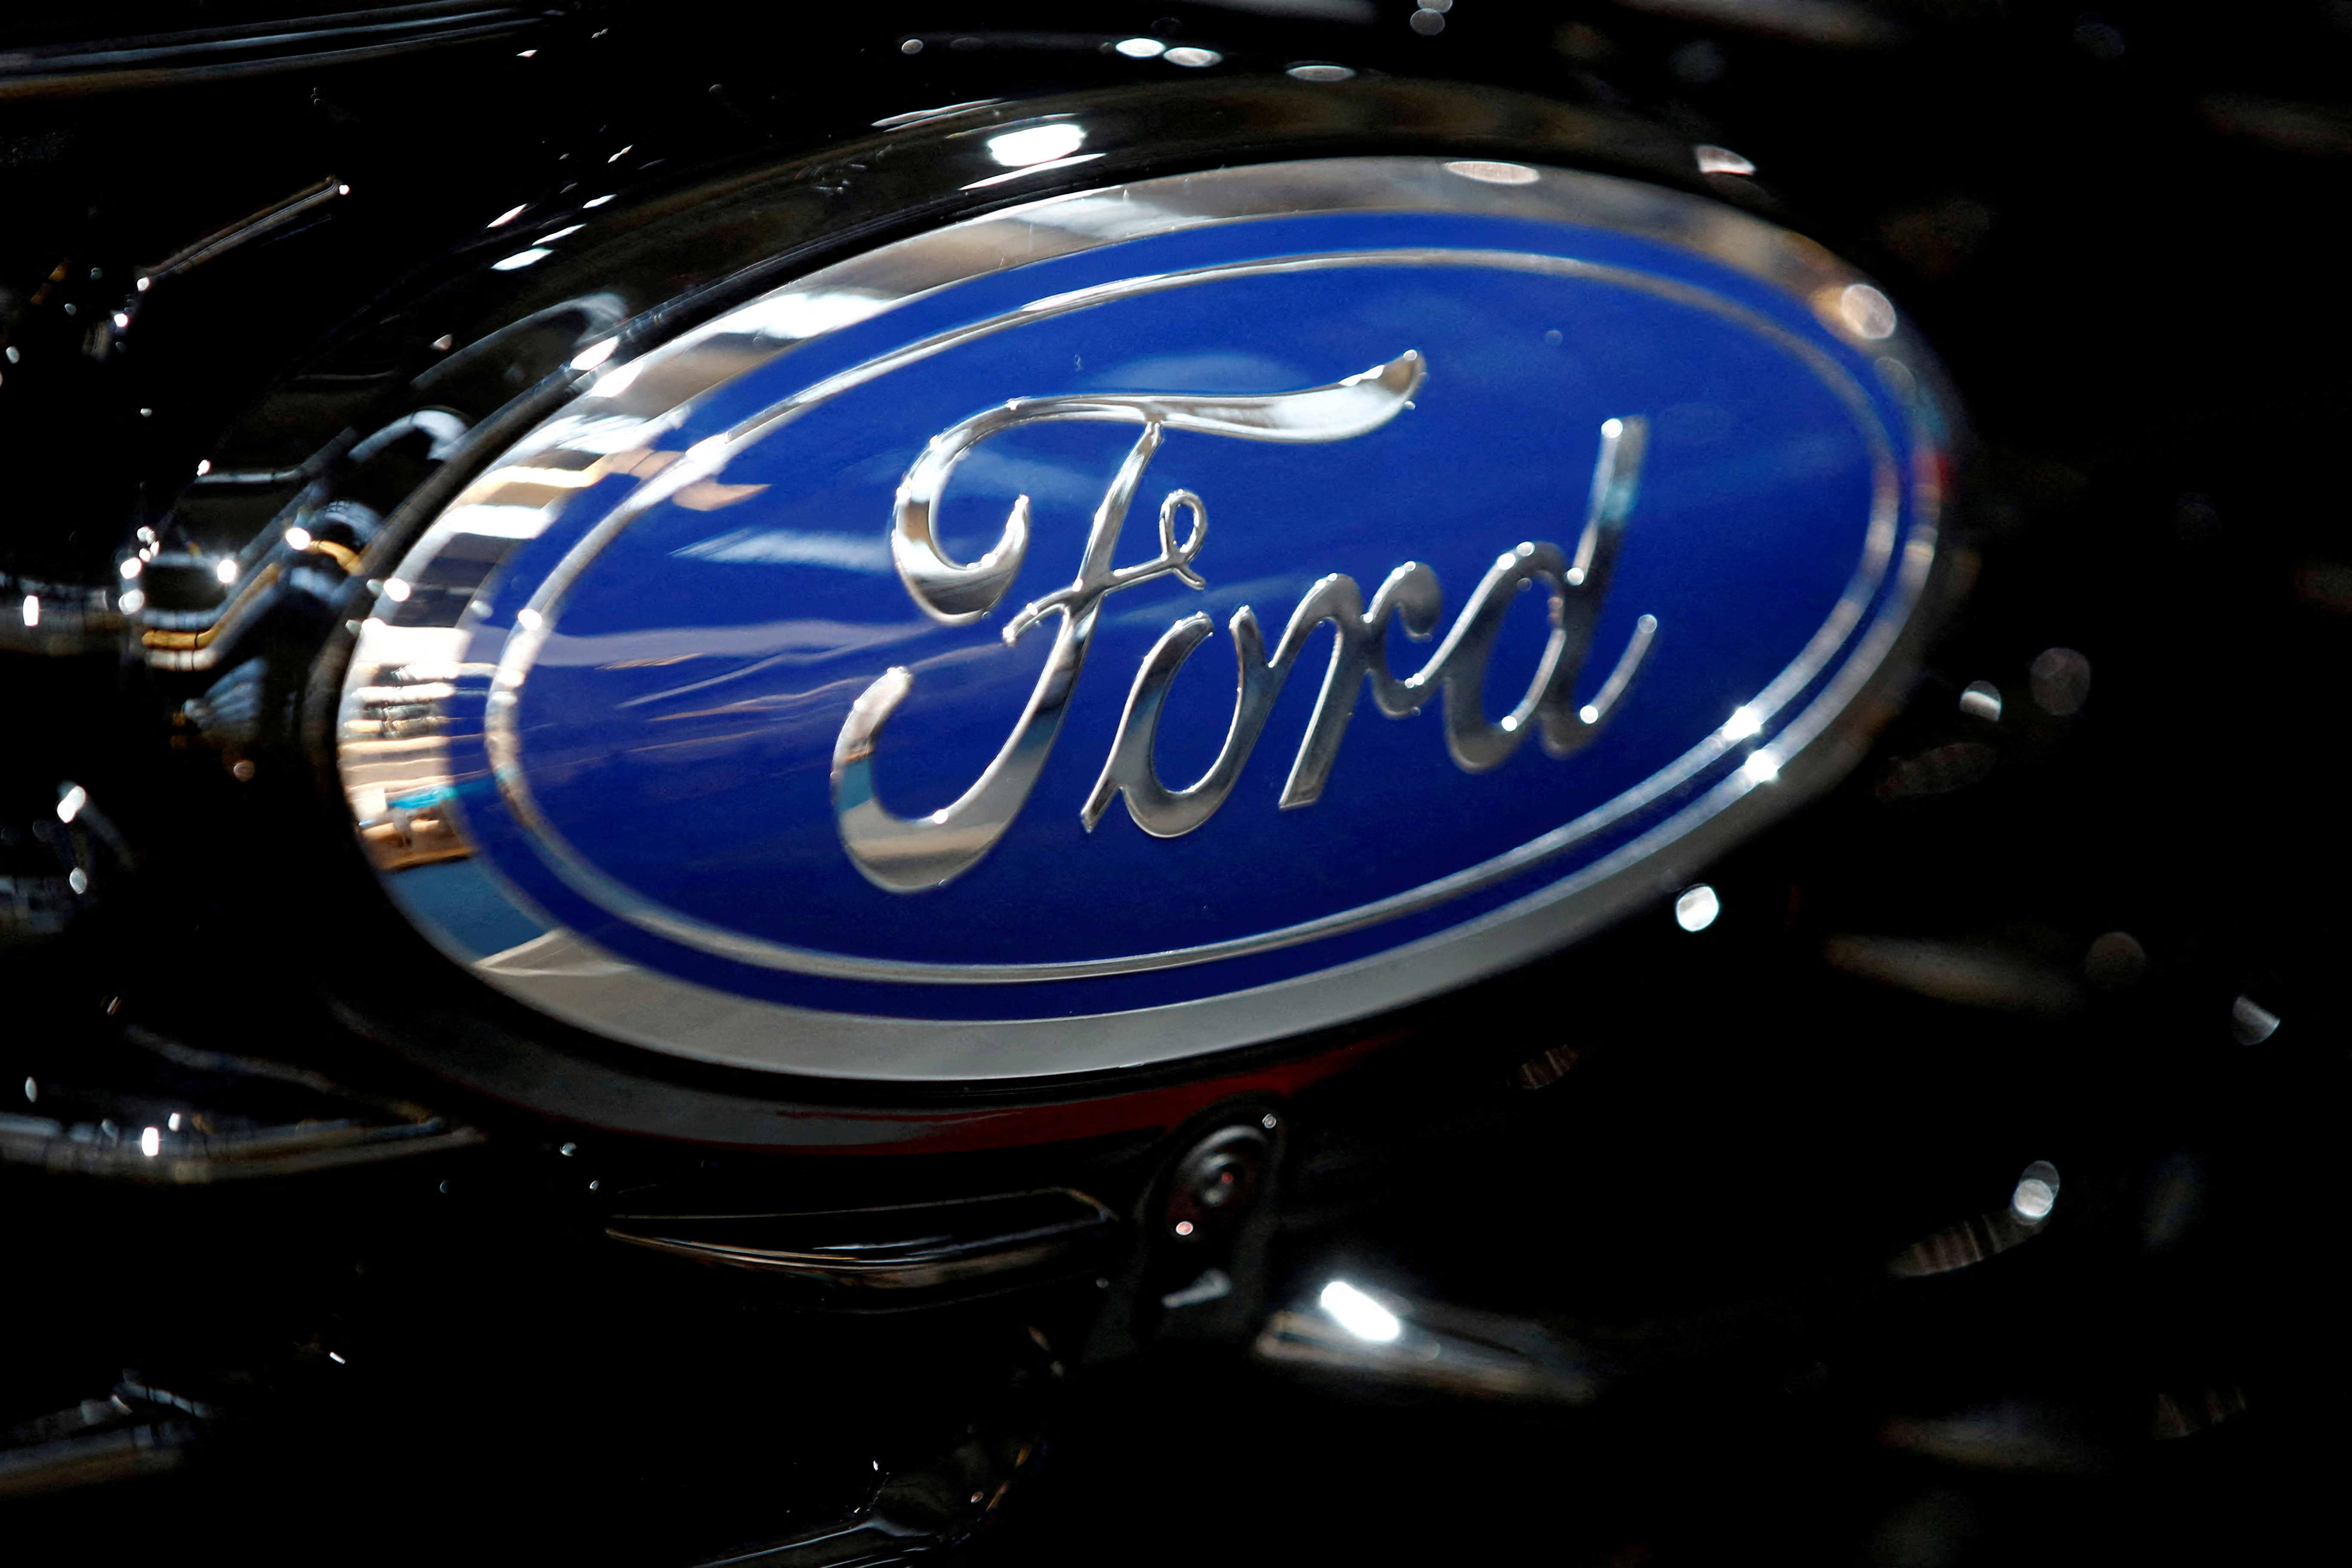 Ford Motor Co's logo